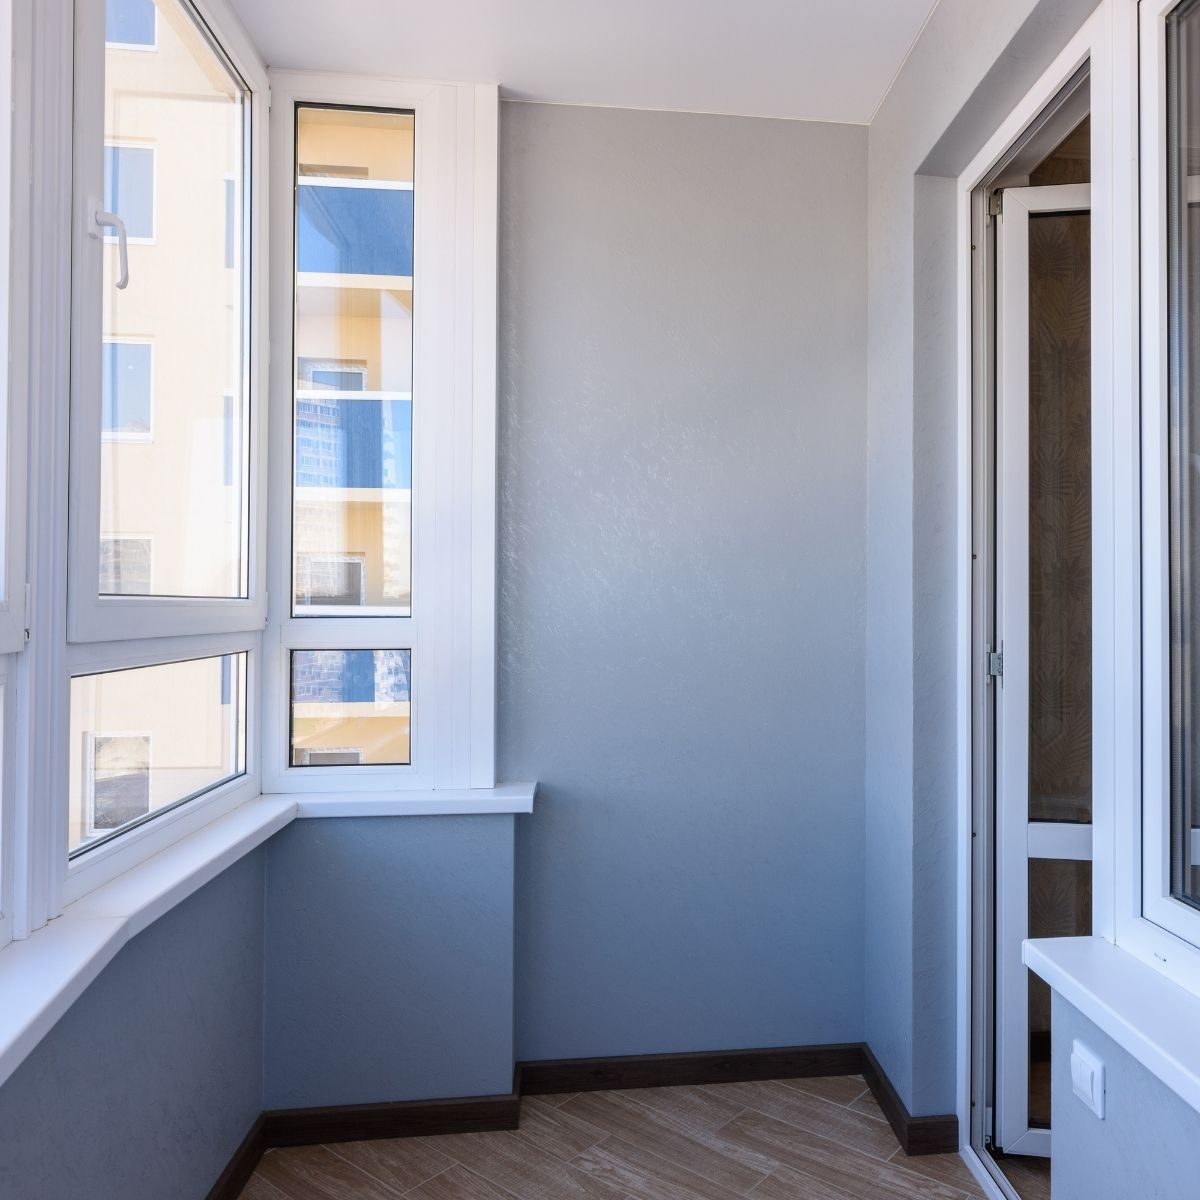 Termoizolační fólie na okna zamezí přehřívání interiéru | Safex